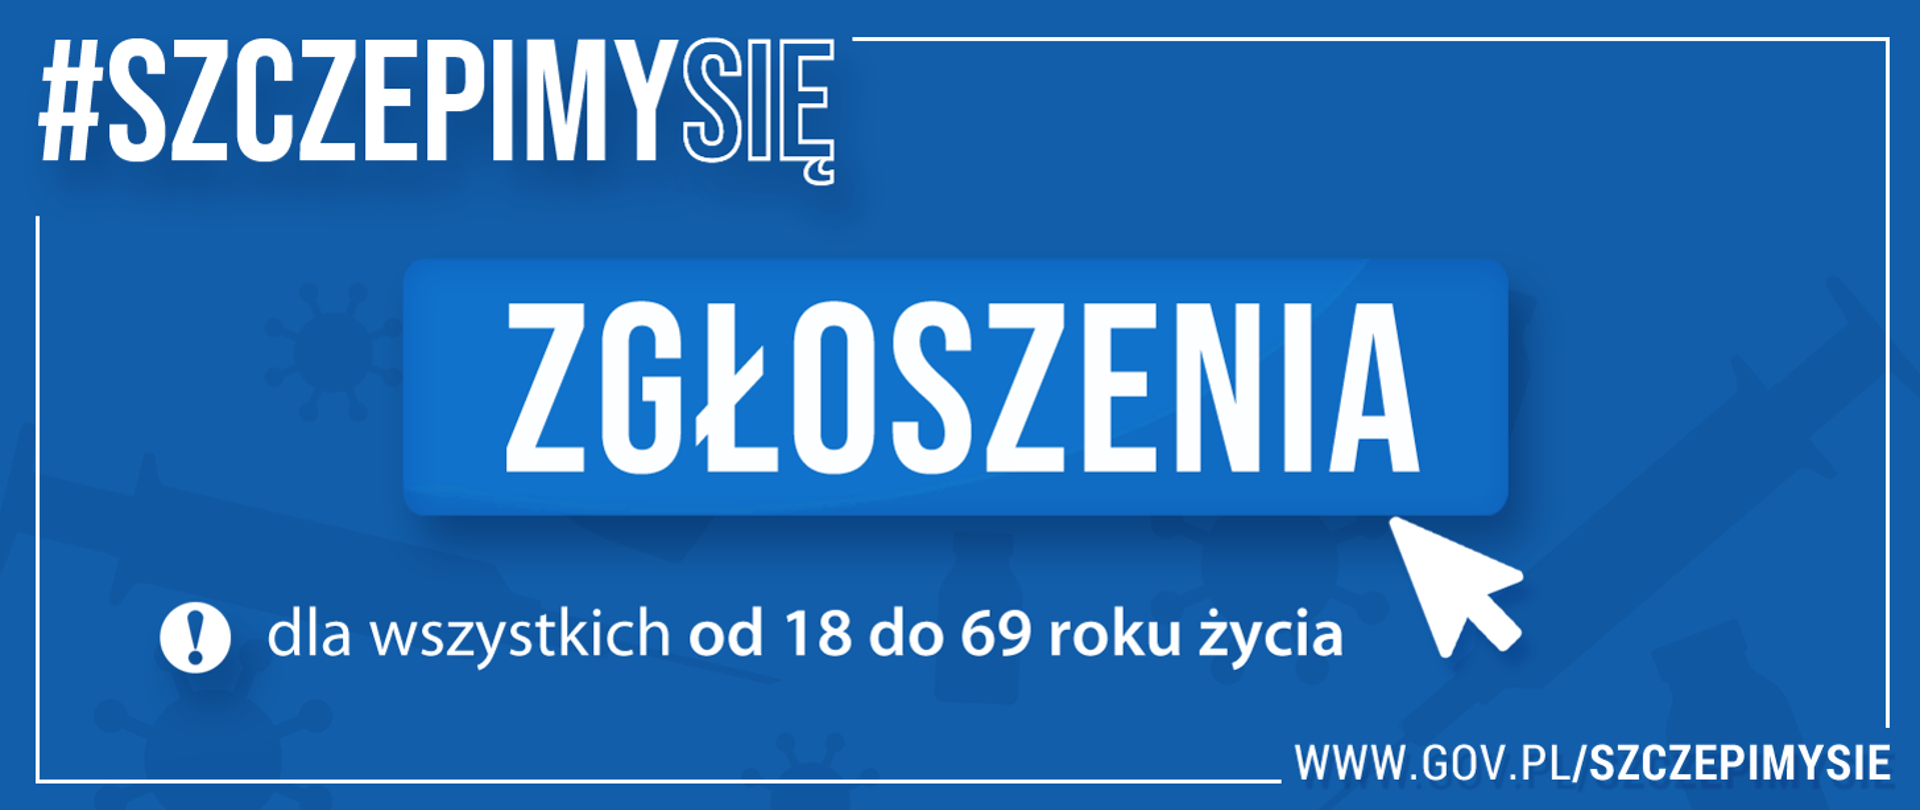 baner o szczepieniu się informujący że są zgłoszenia dla wszystkich od 18 do 69 roku życia. strona internetowa www.gov.pl/szczepimysie